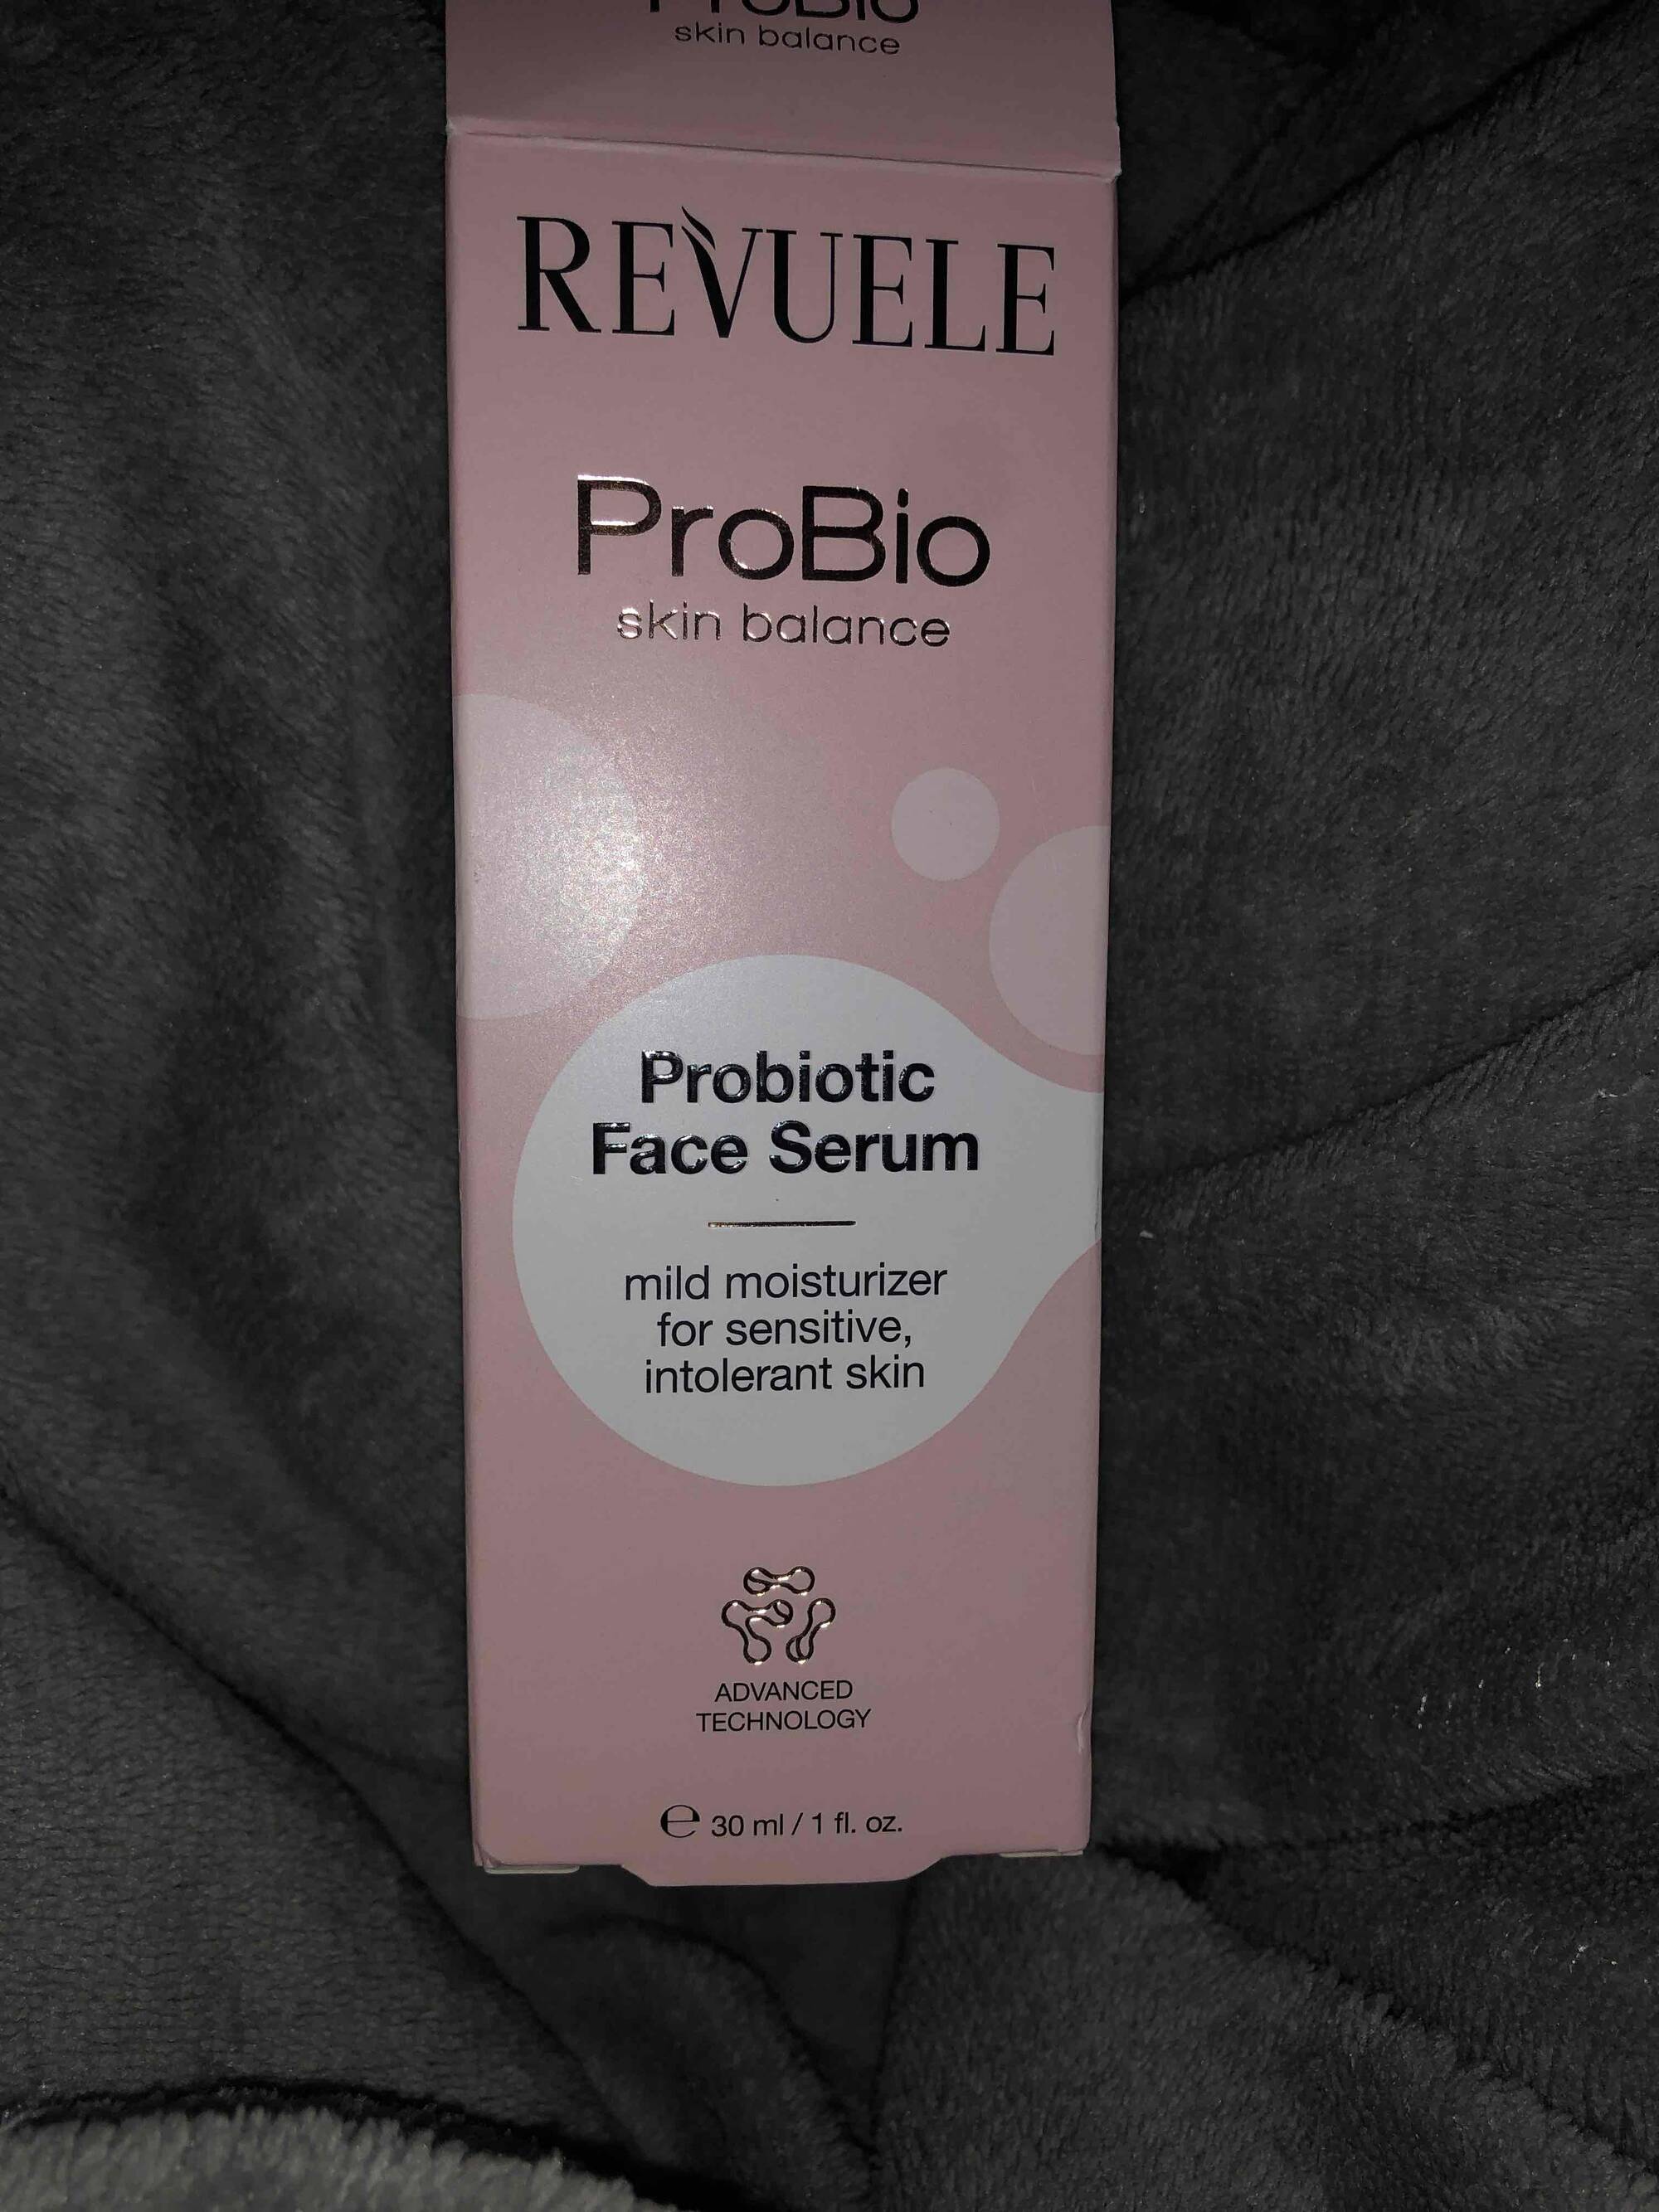 REVUELE - Probiotic face serum